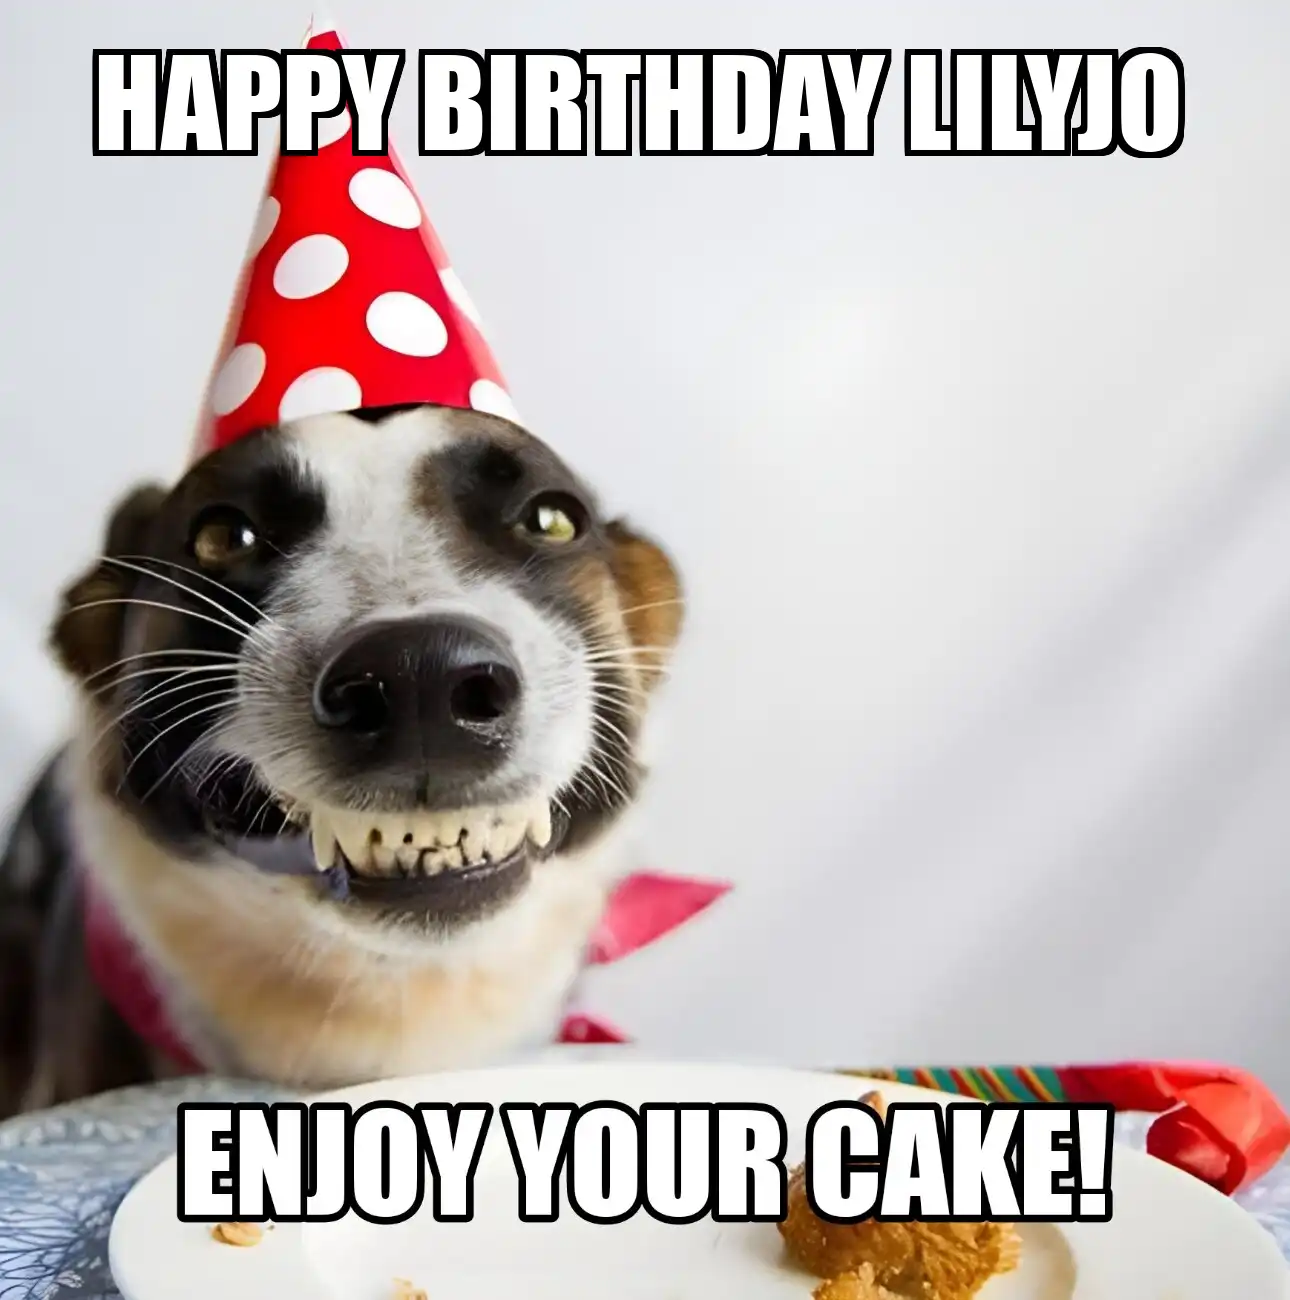 Happy Birthday Lilyjo Enjoy Your Cake Dog Meme